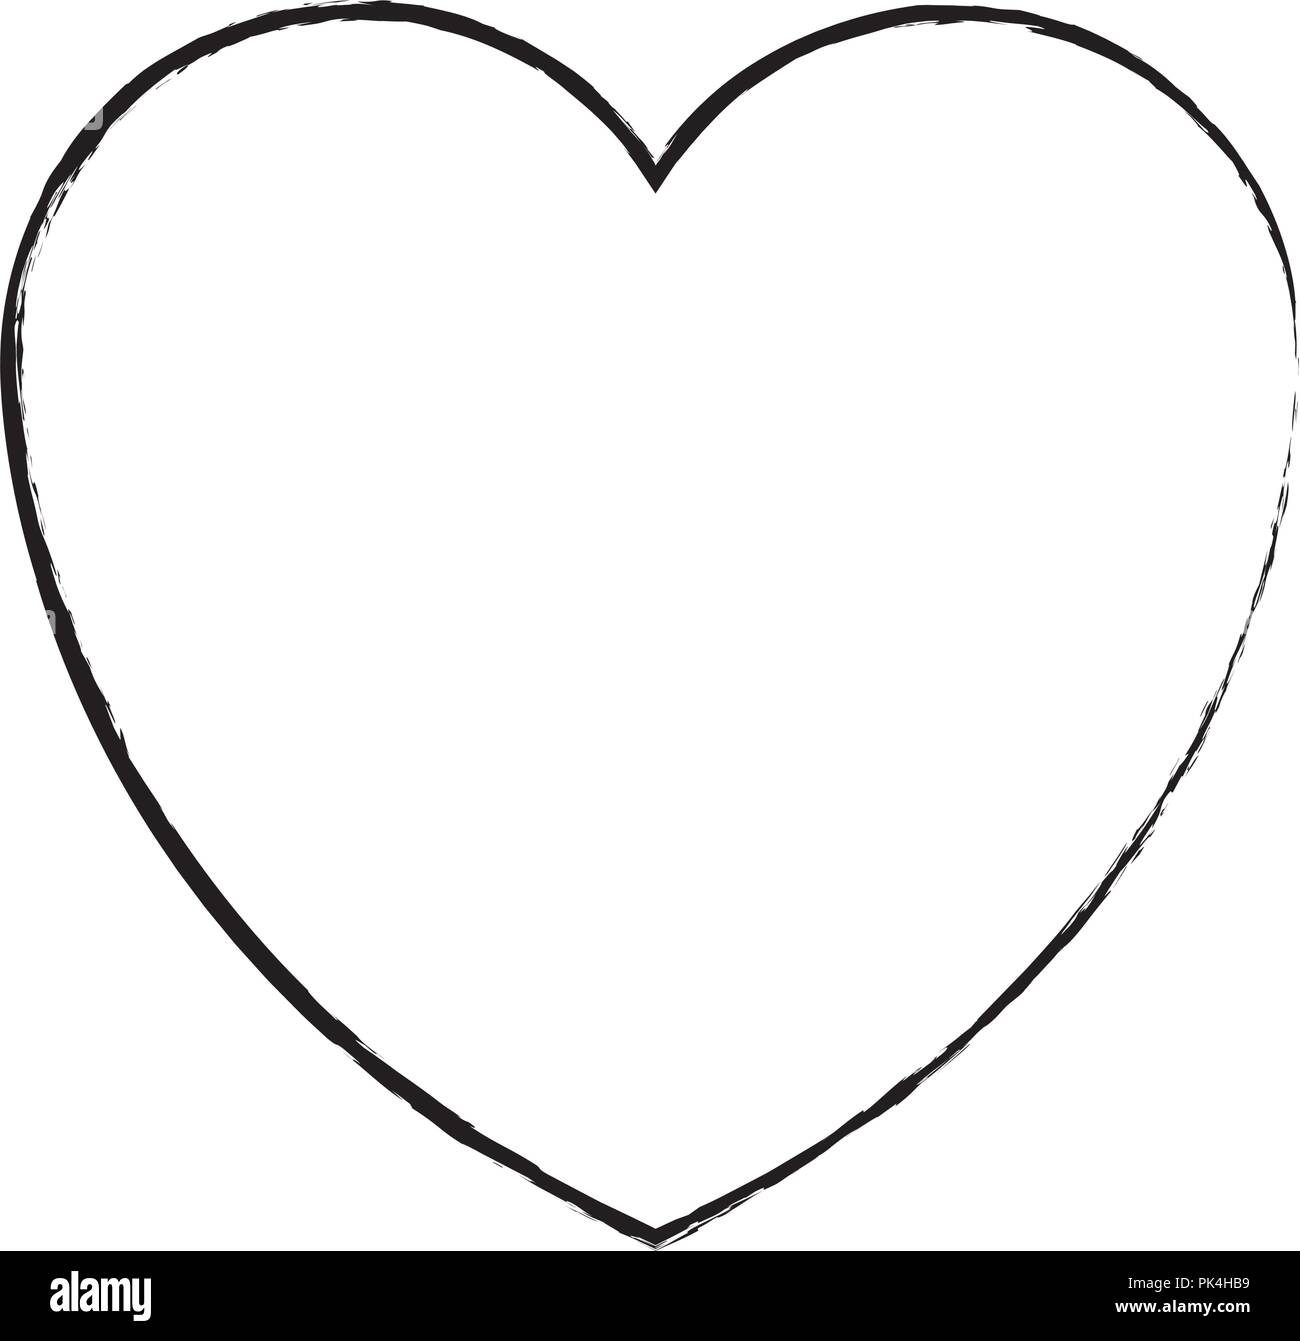 Doodle heart symbol sketch love symbol Royalty Free Vector